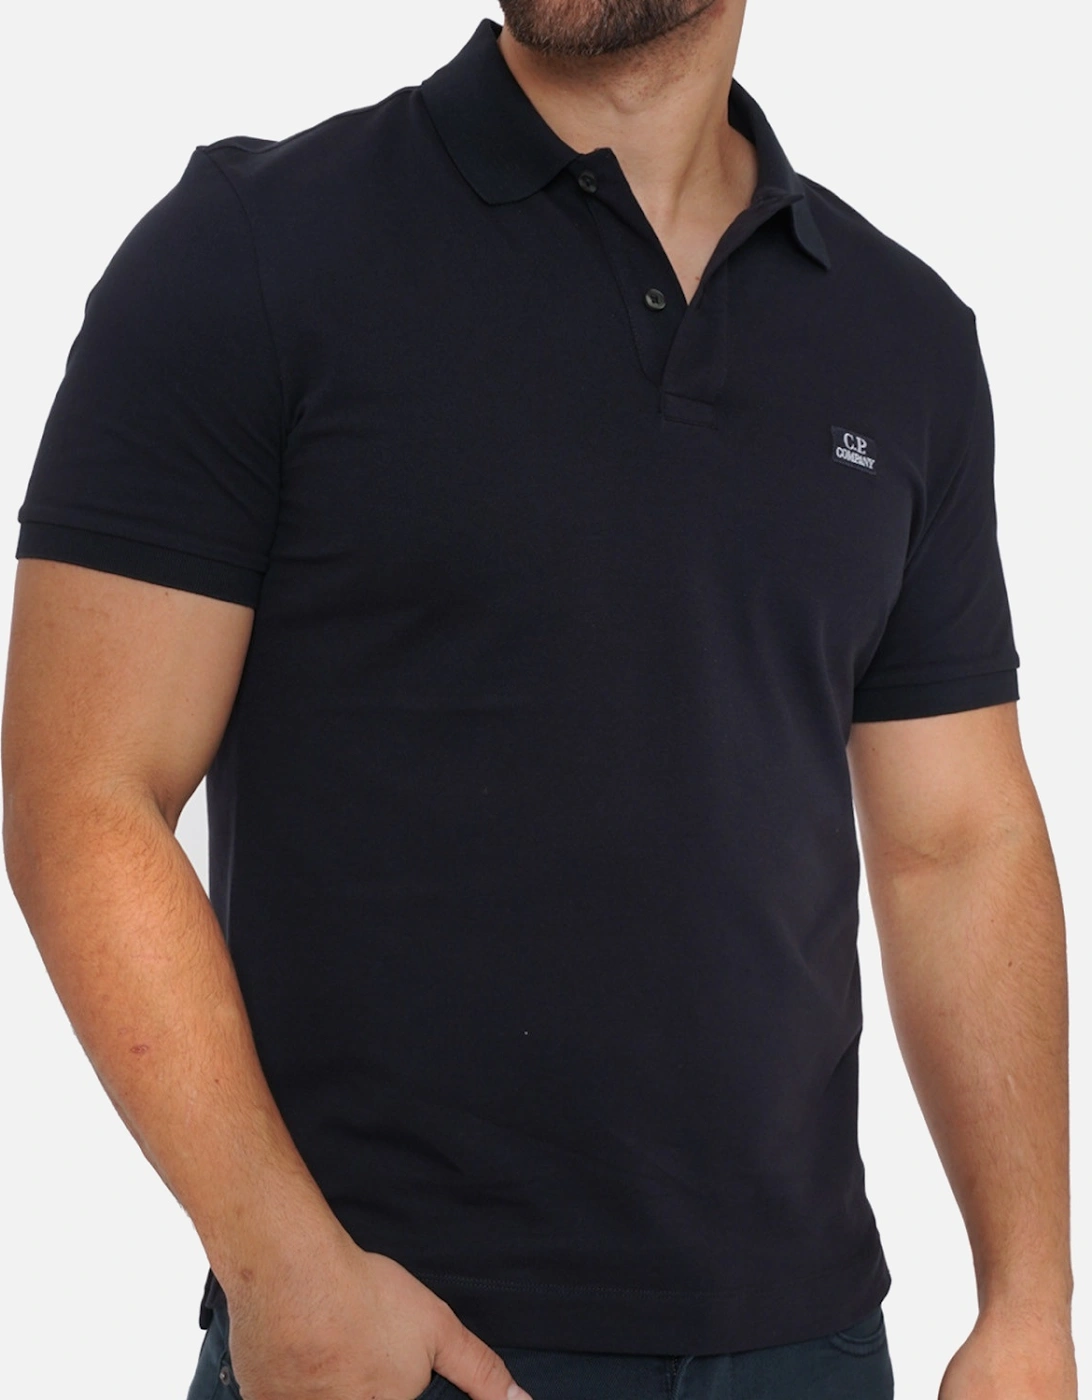 C.P. Company Mens Short Sleeve Polo Shirt (Navy)